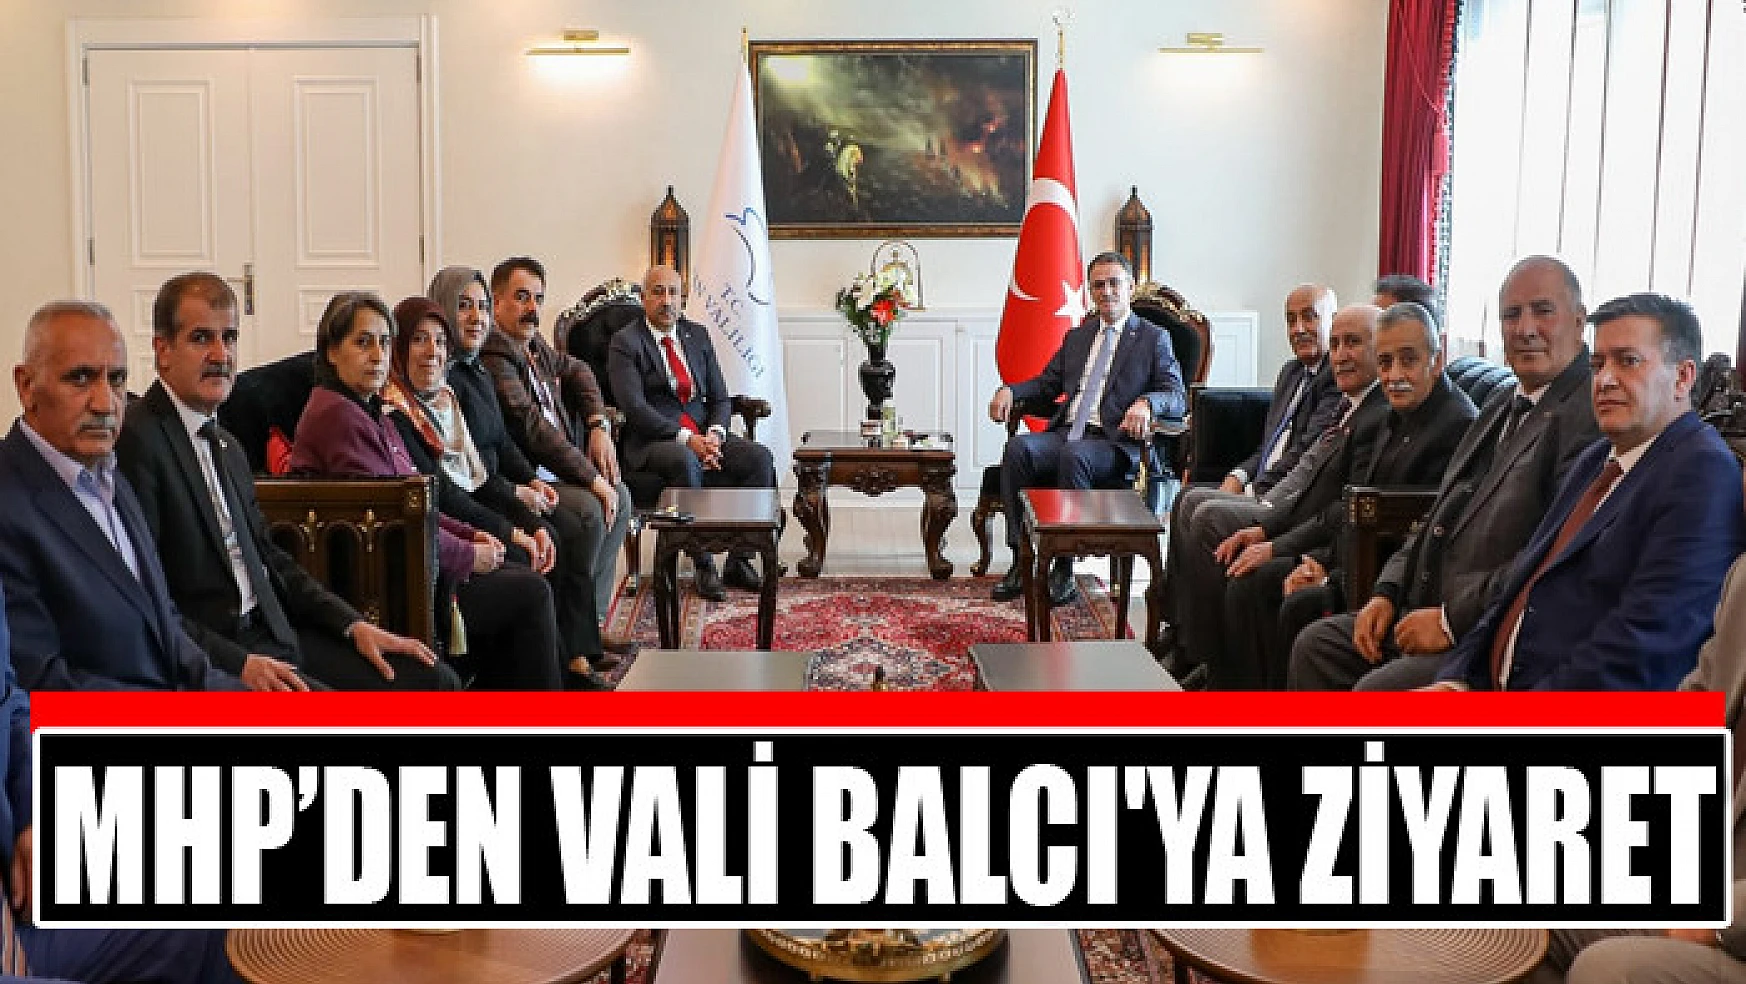 MHP'den Vali Balcı'ya ziyaret